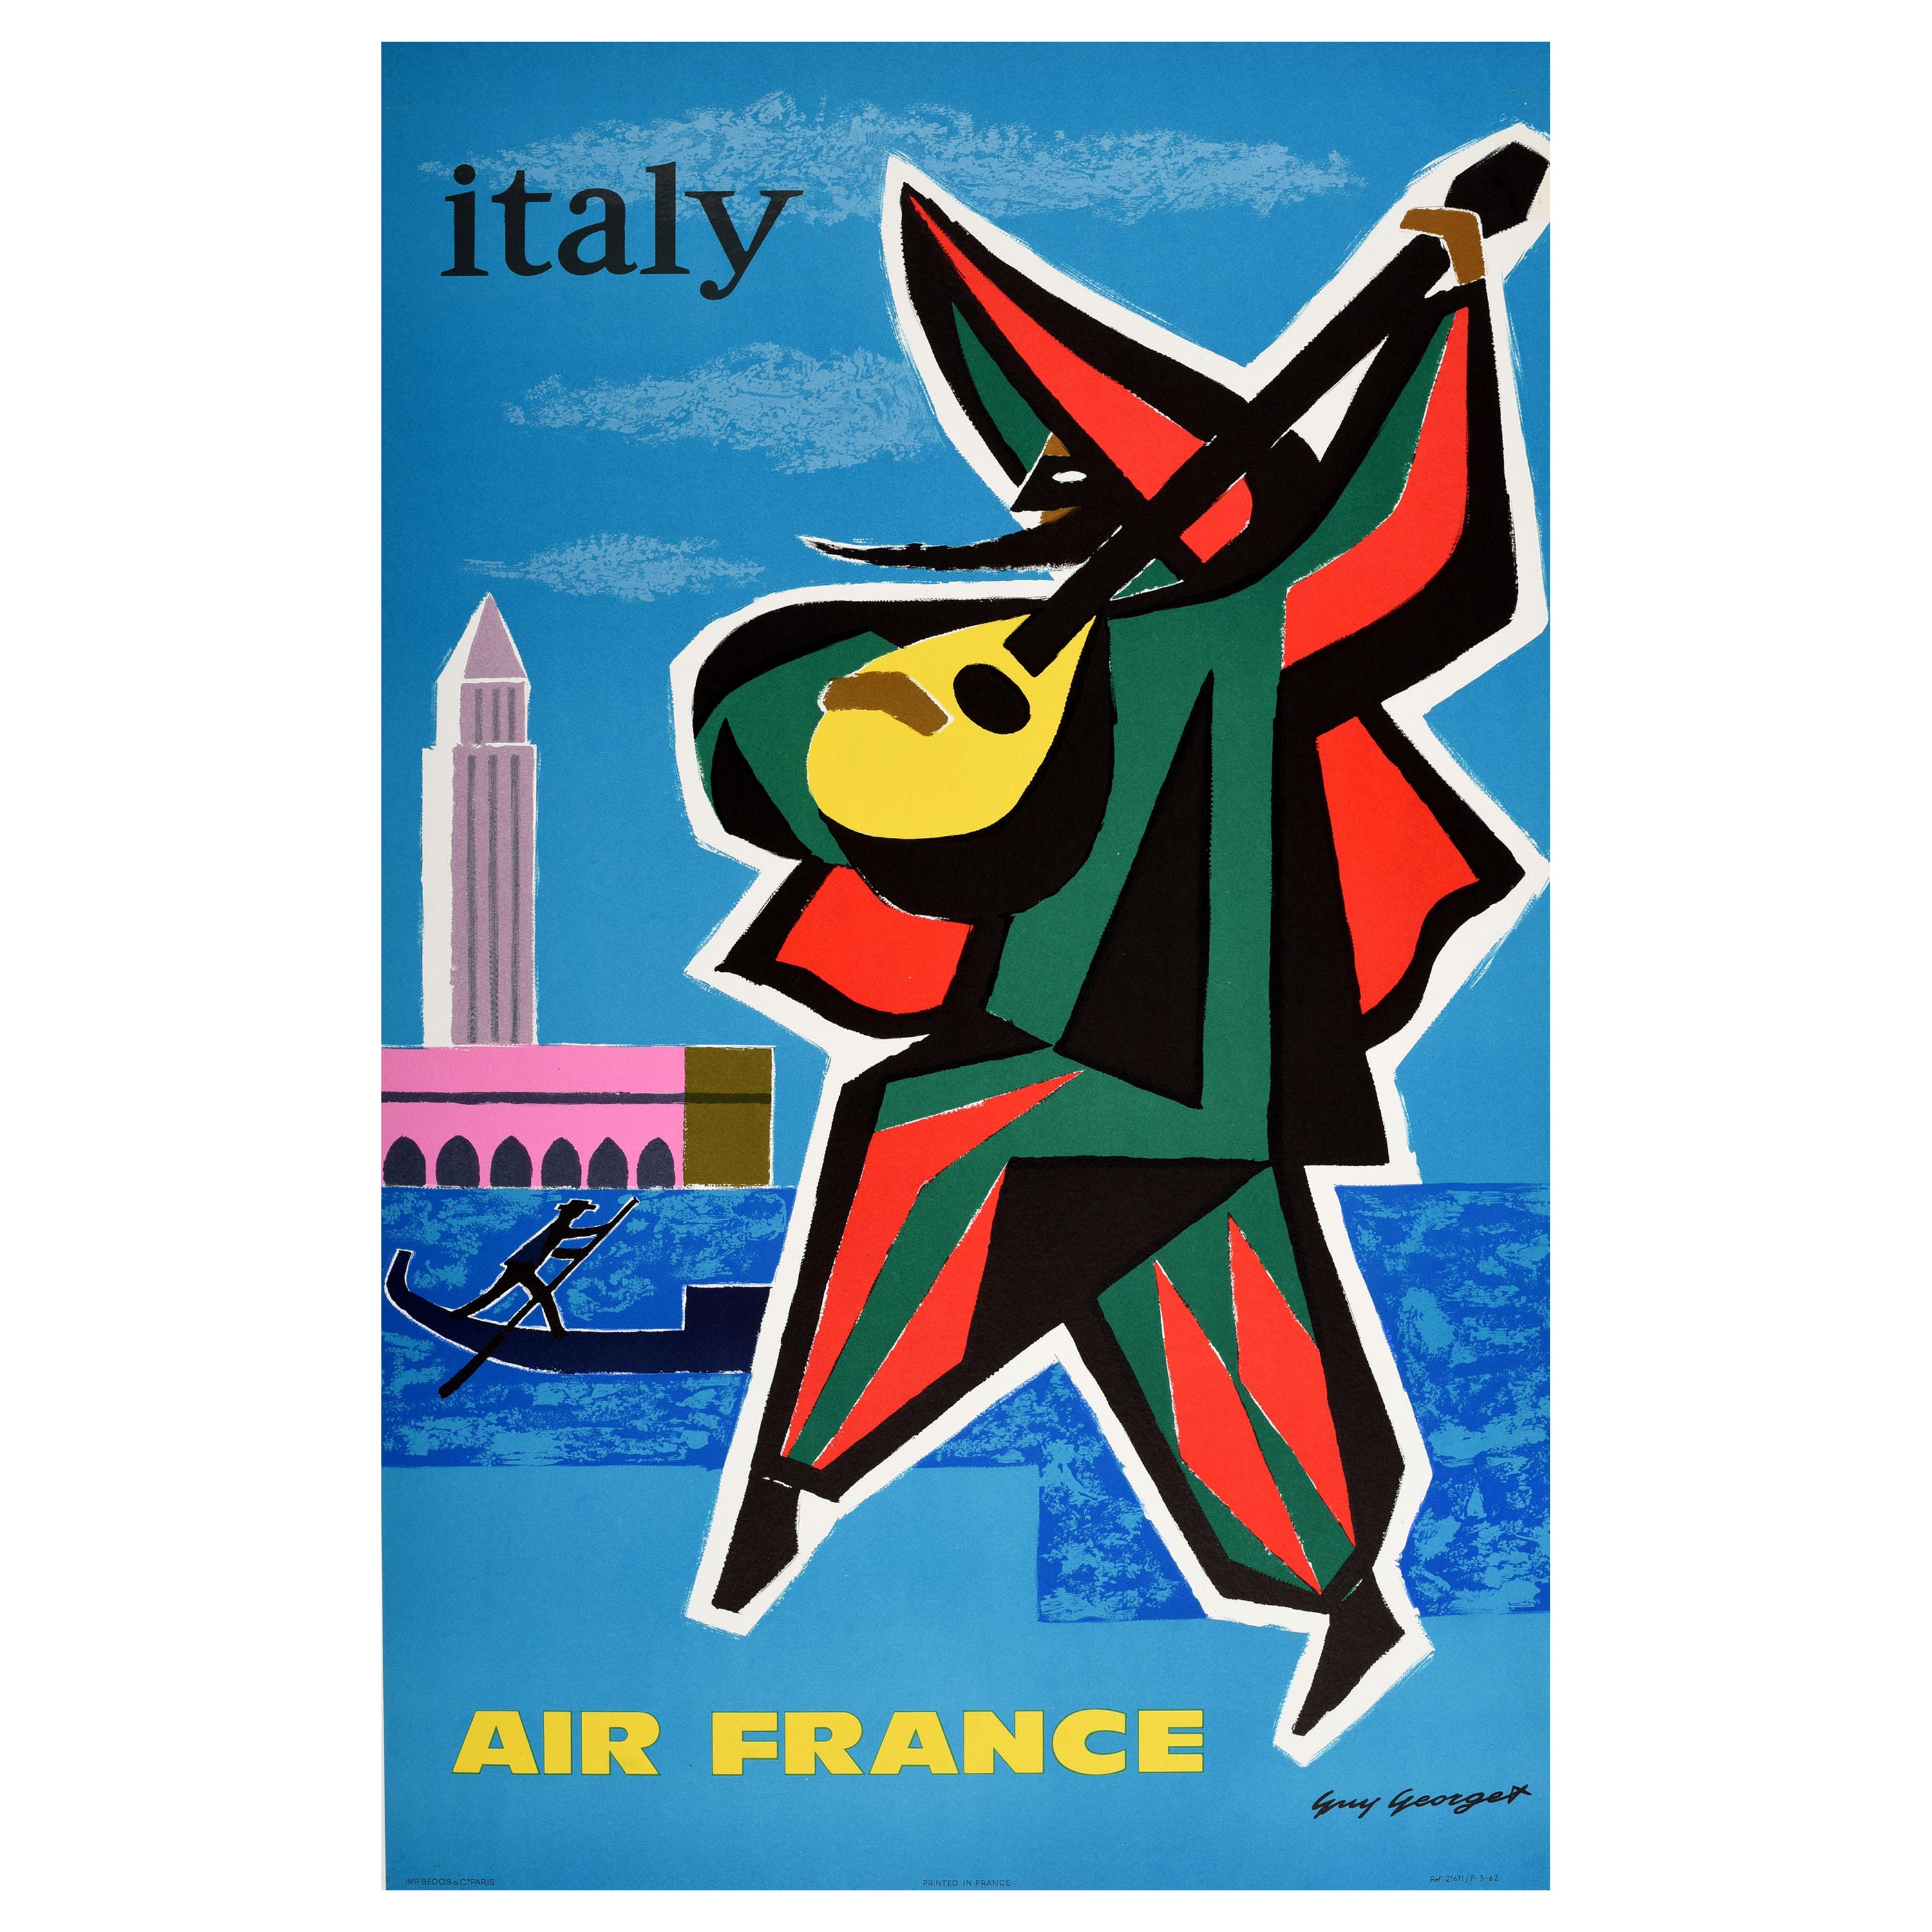 Original-Vintage-Reise-Werbeplakat, Italien, Venedig, Air France, Guy Georget